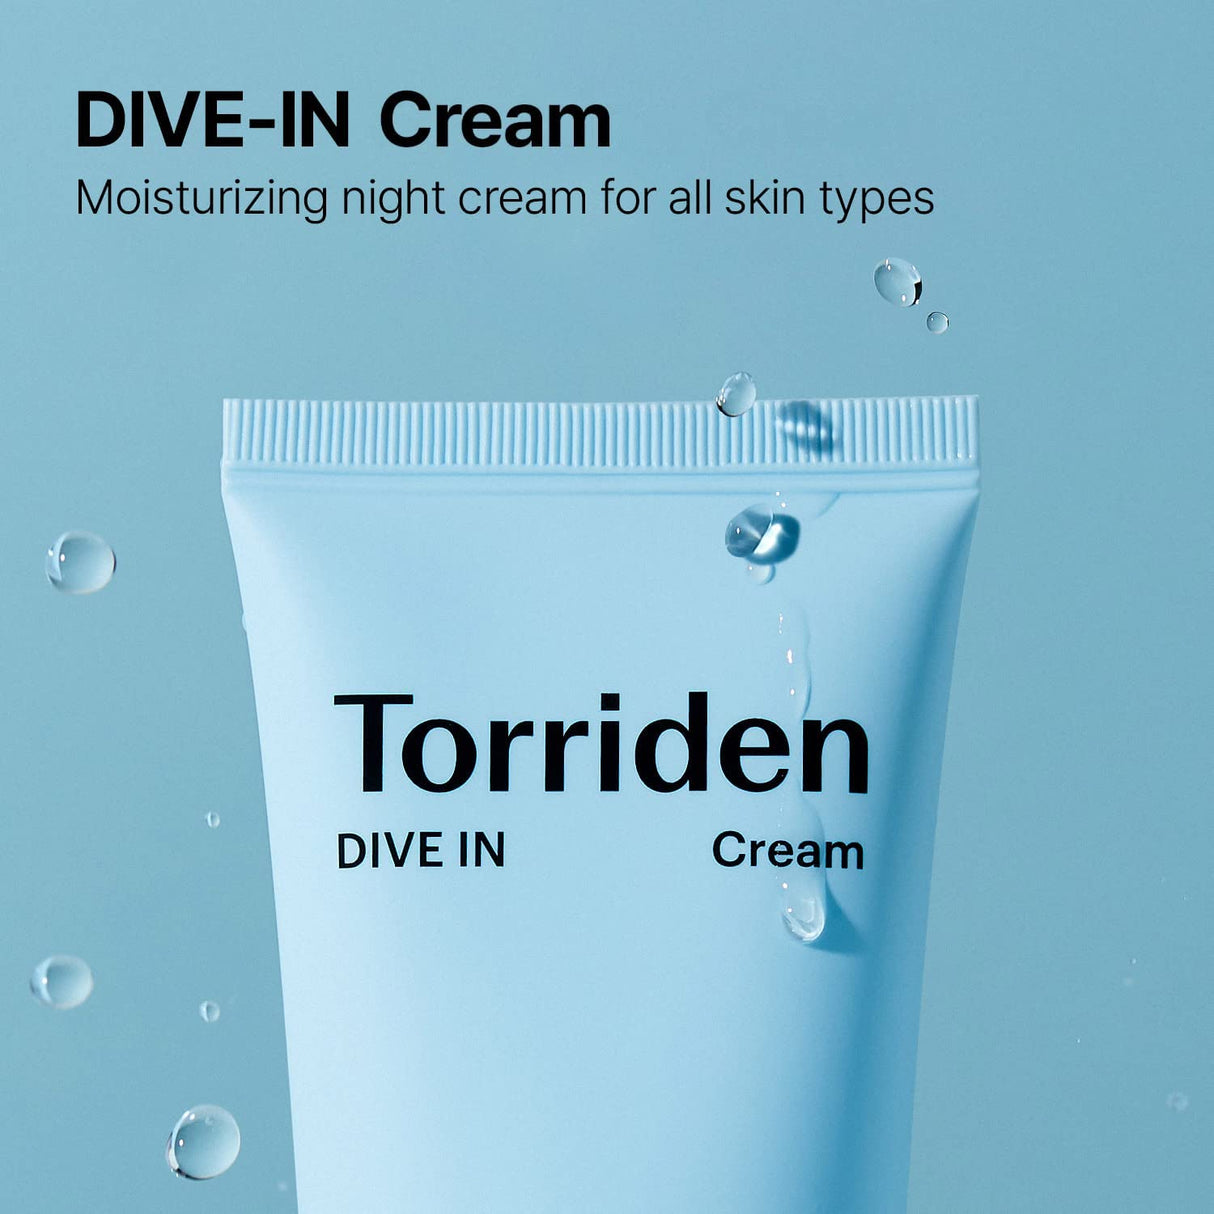 Torriden DIVE-IN Low Molecular Hyaluronic Acid Cream